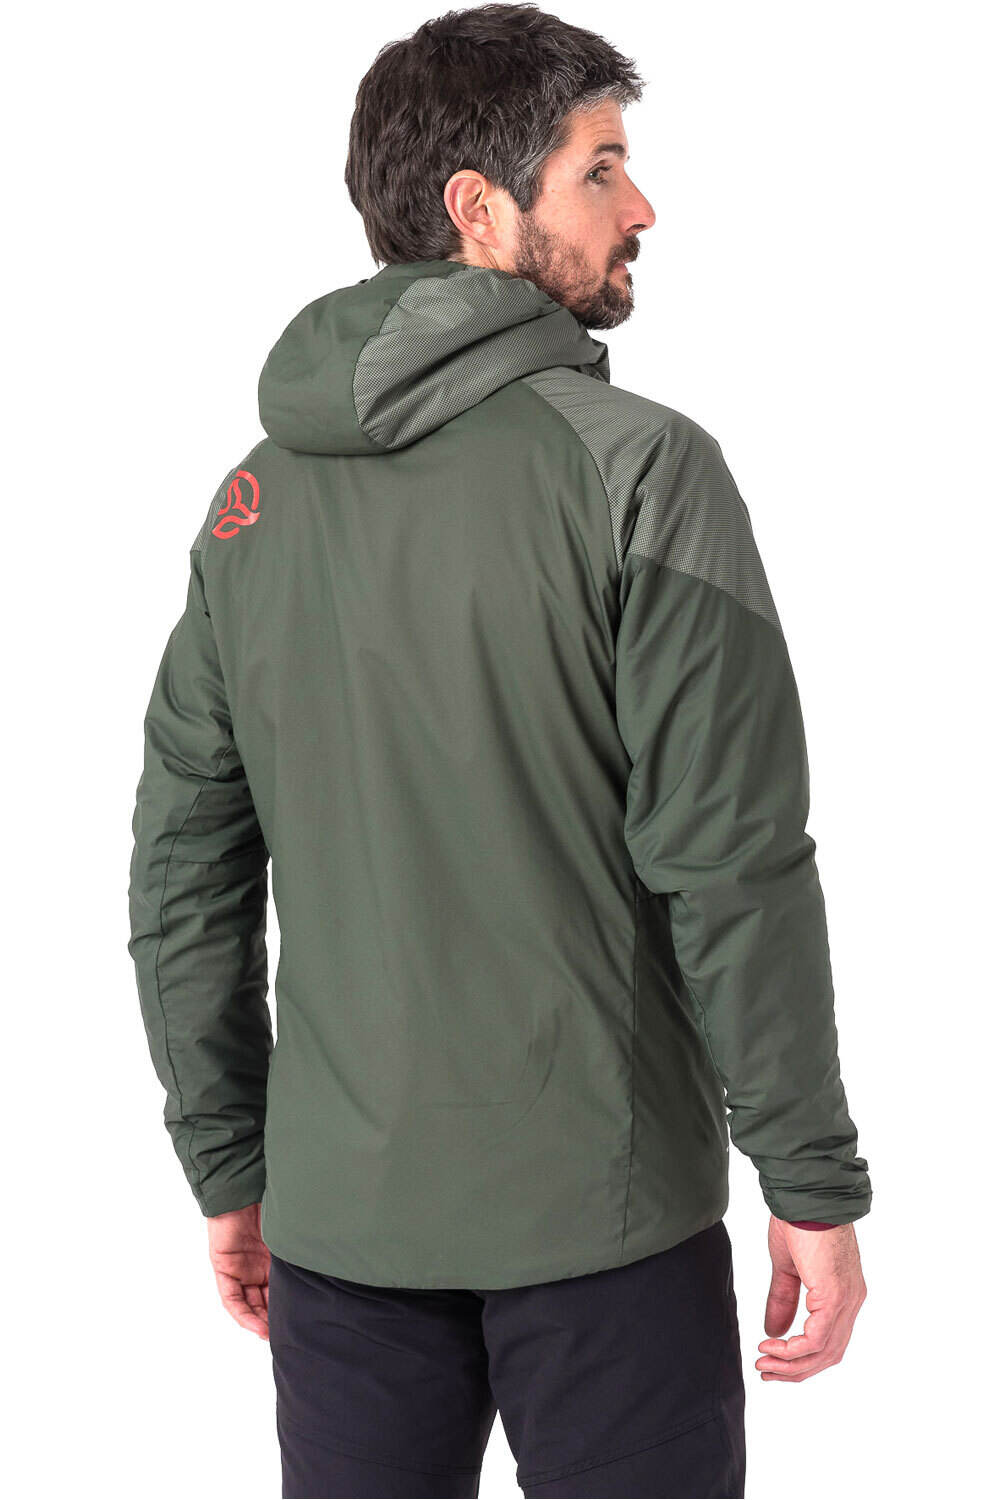 Ternua chaqueta outdoor hombre KIMO JKT vista detalle